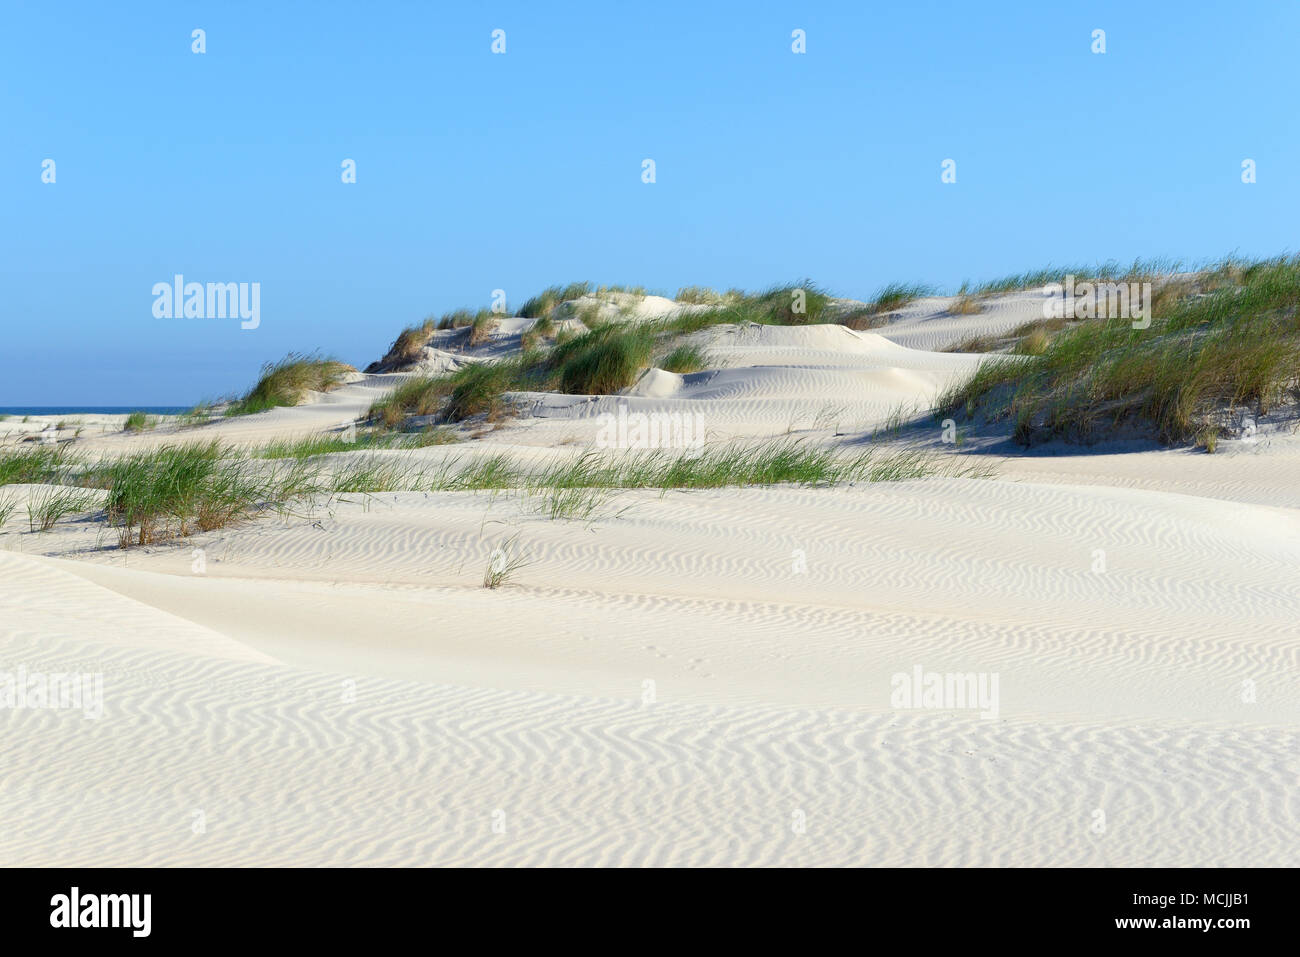 Dunes de sable recouvert d'ammophile à ligule courte (Ammophila), Norderney, îles de la Frise orientale, mer du Nord, Basse-Saxe, Allemagne Banque D'Images